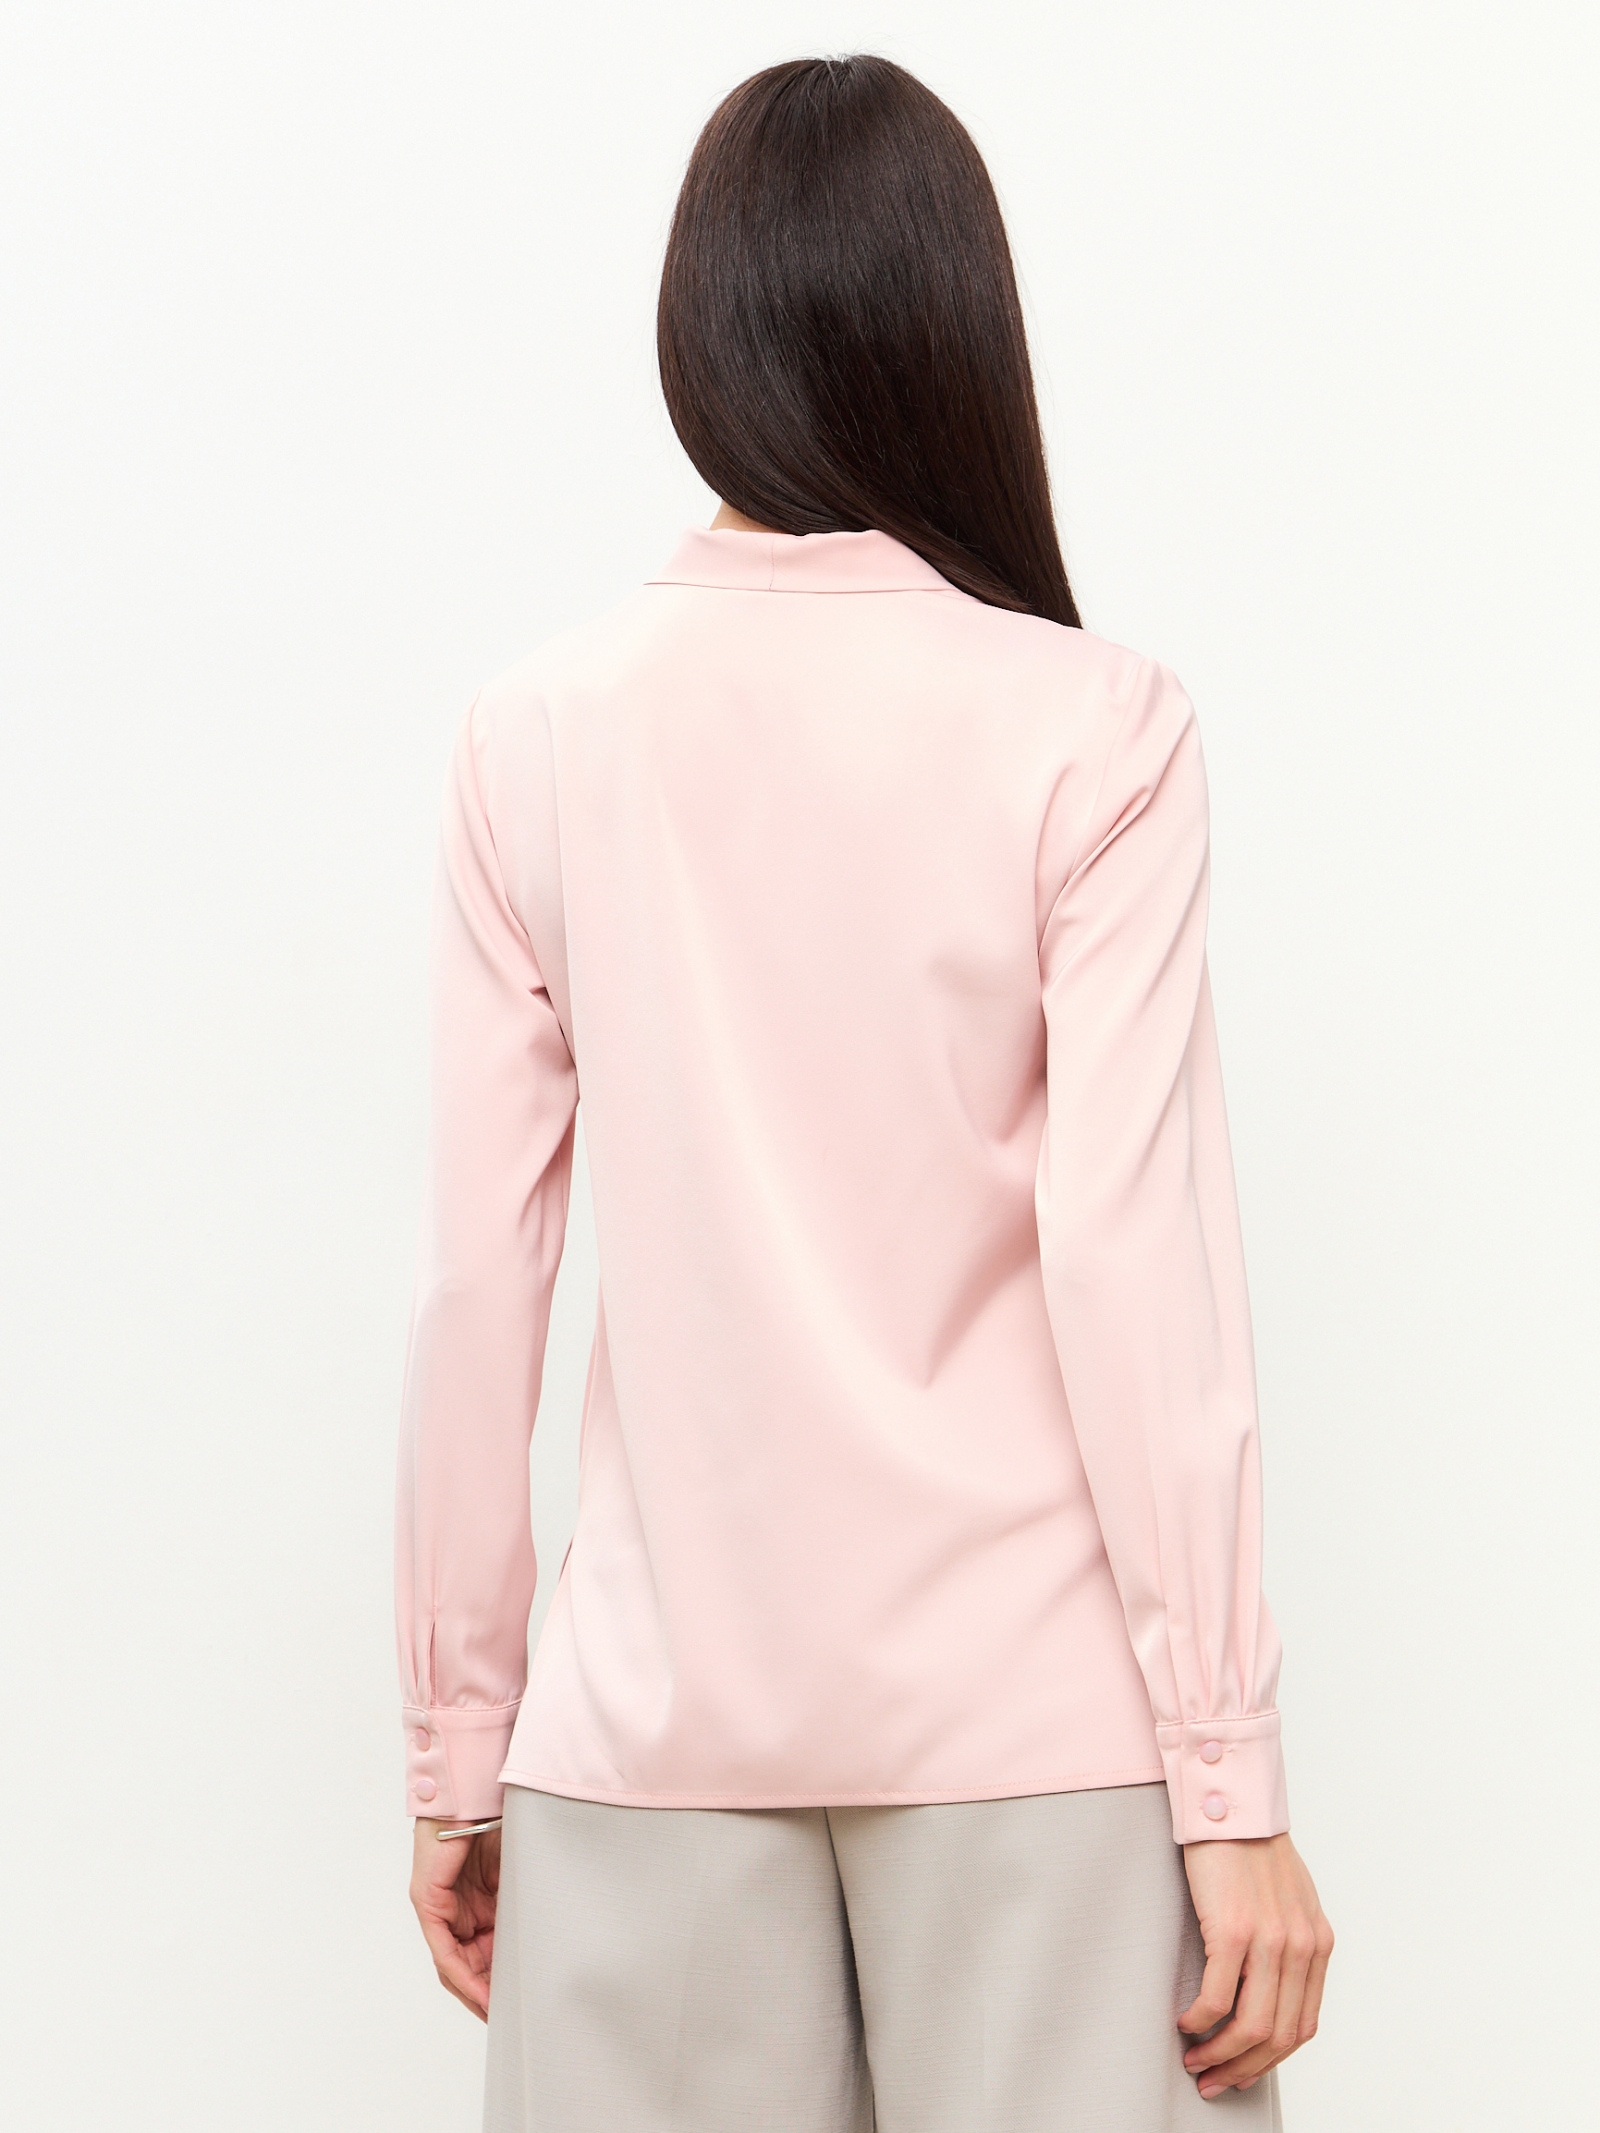 Блузка из сатина с V вырезом OD-8071-5 розовый